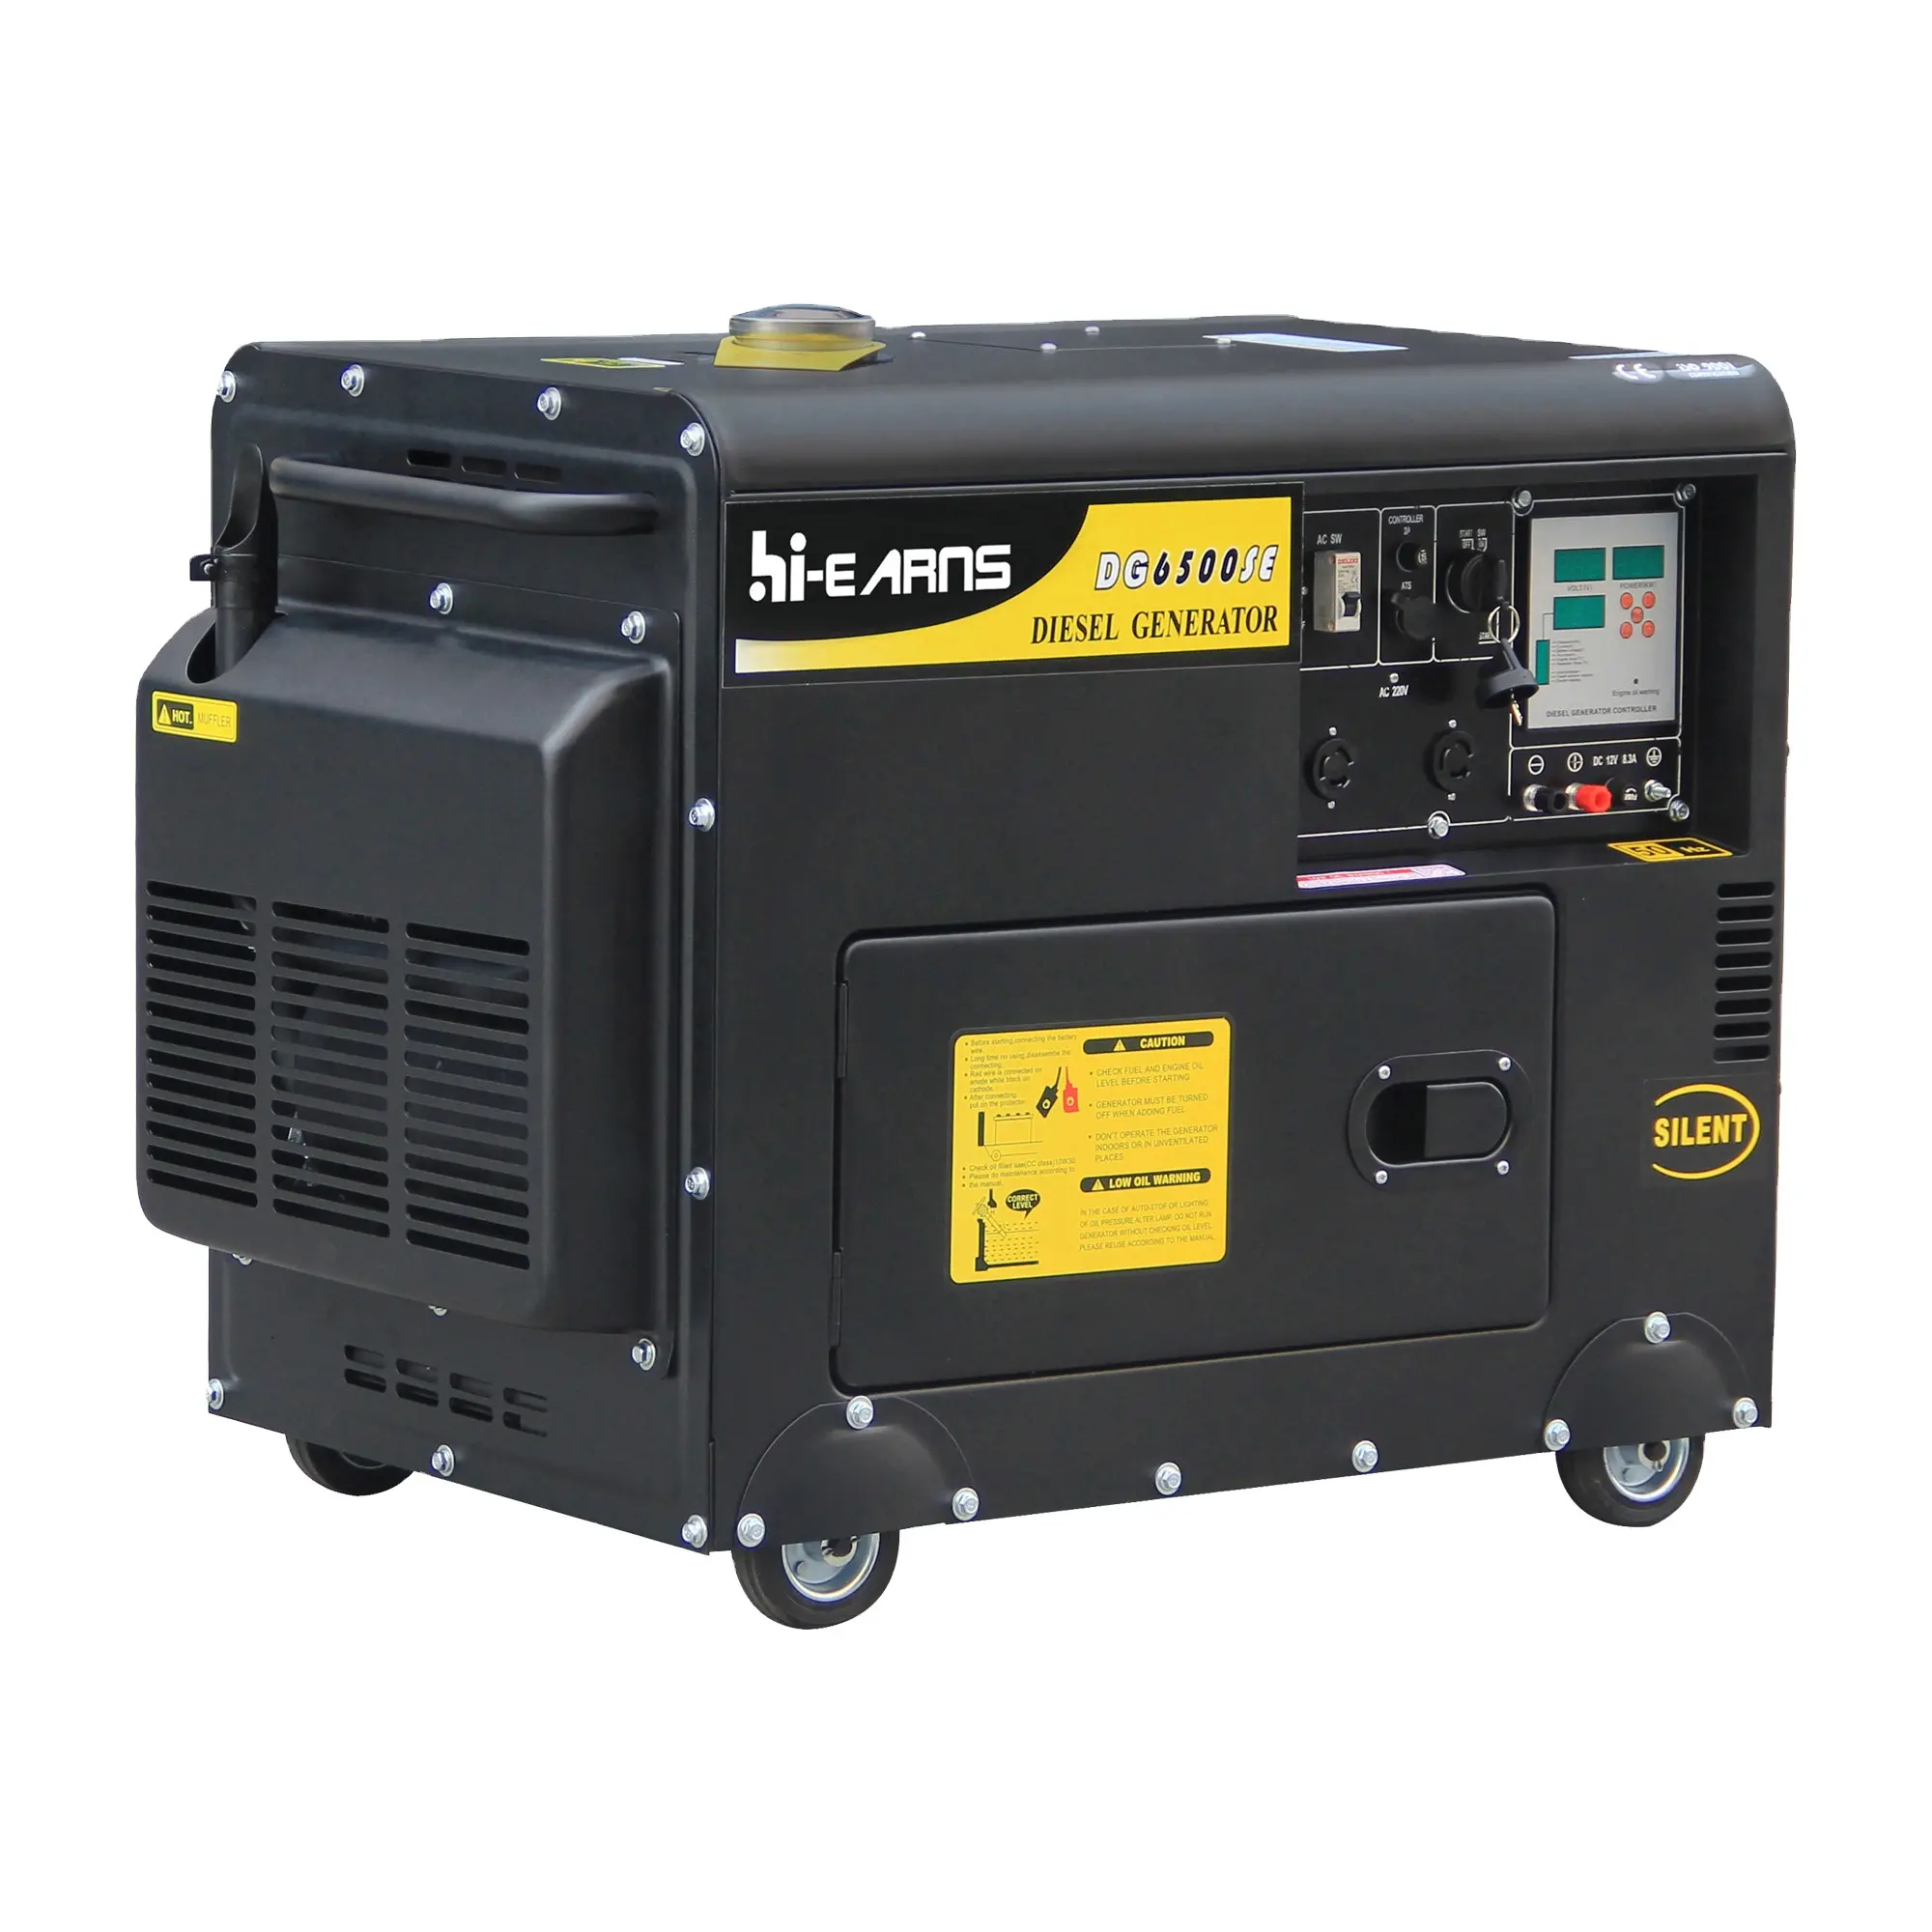 5KW silenzioso uso domestico generatore diesel set DG6500SE